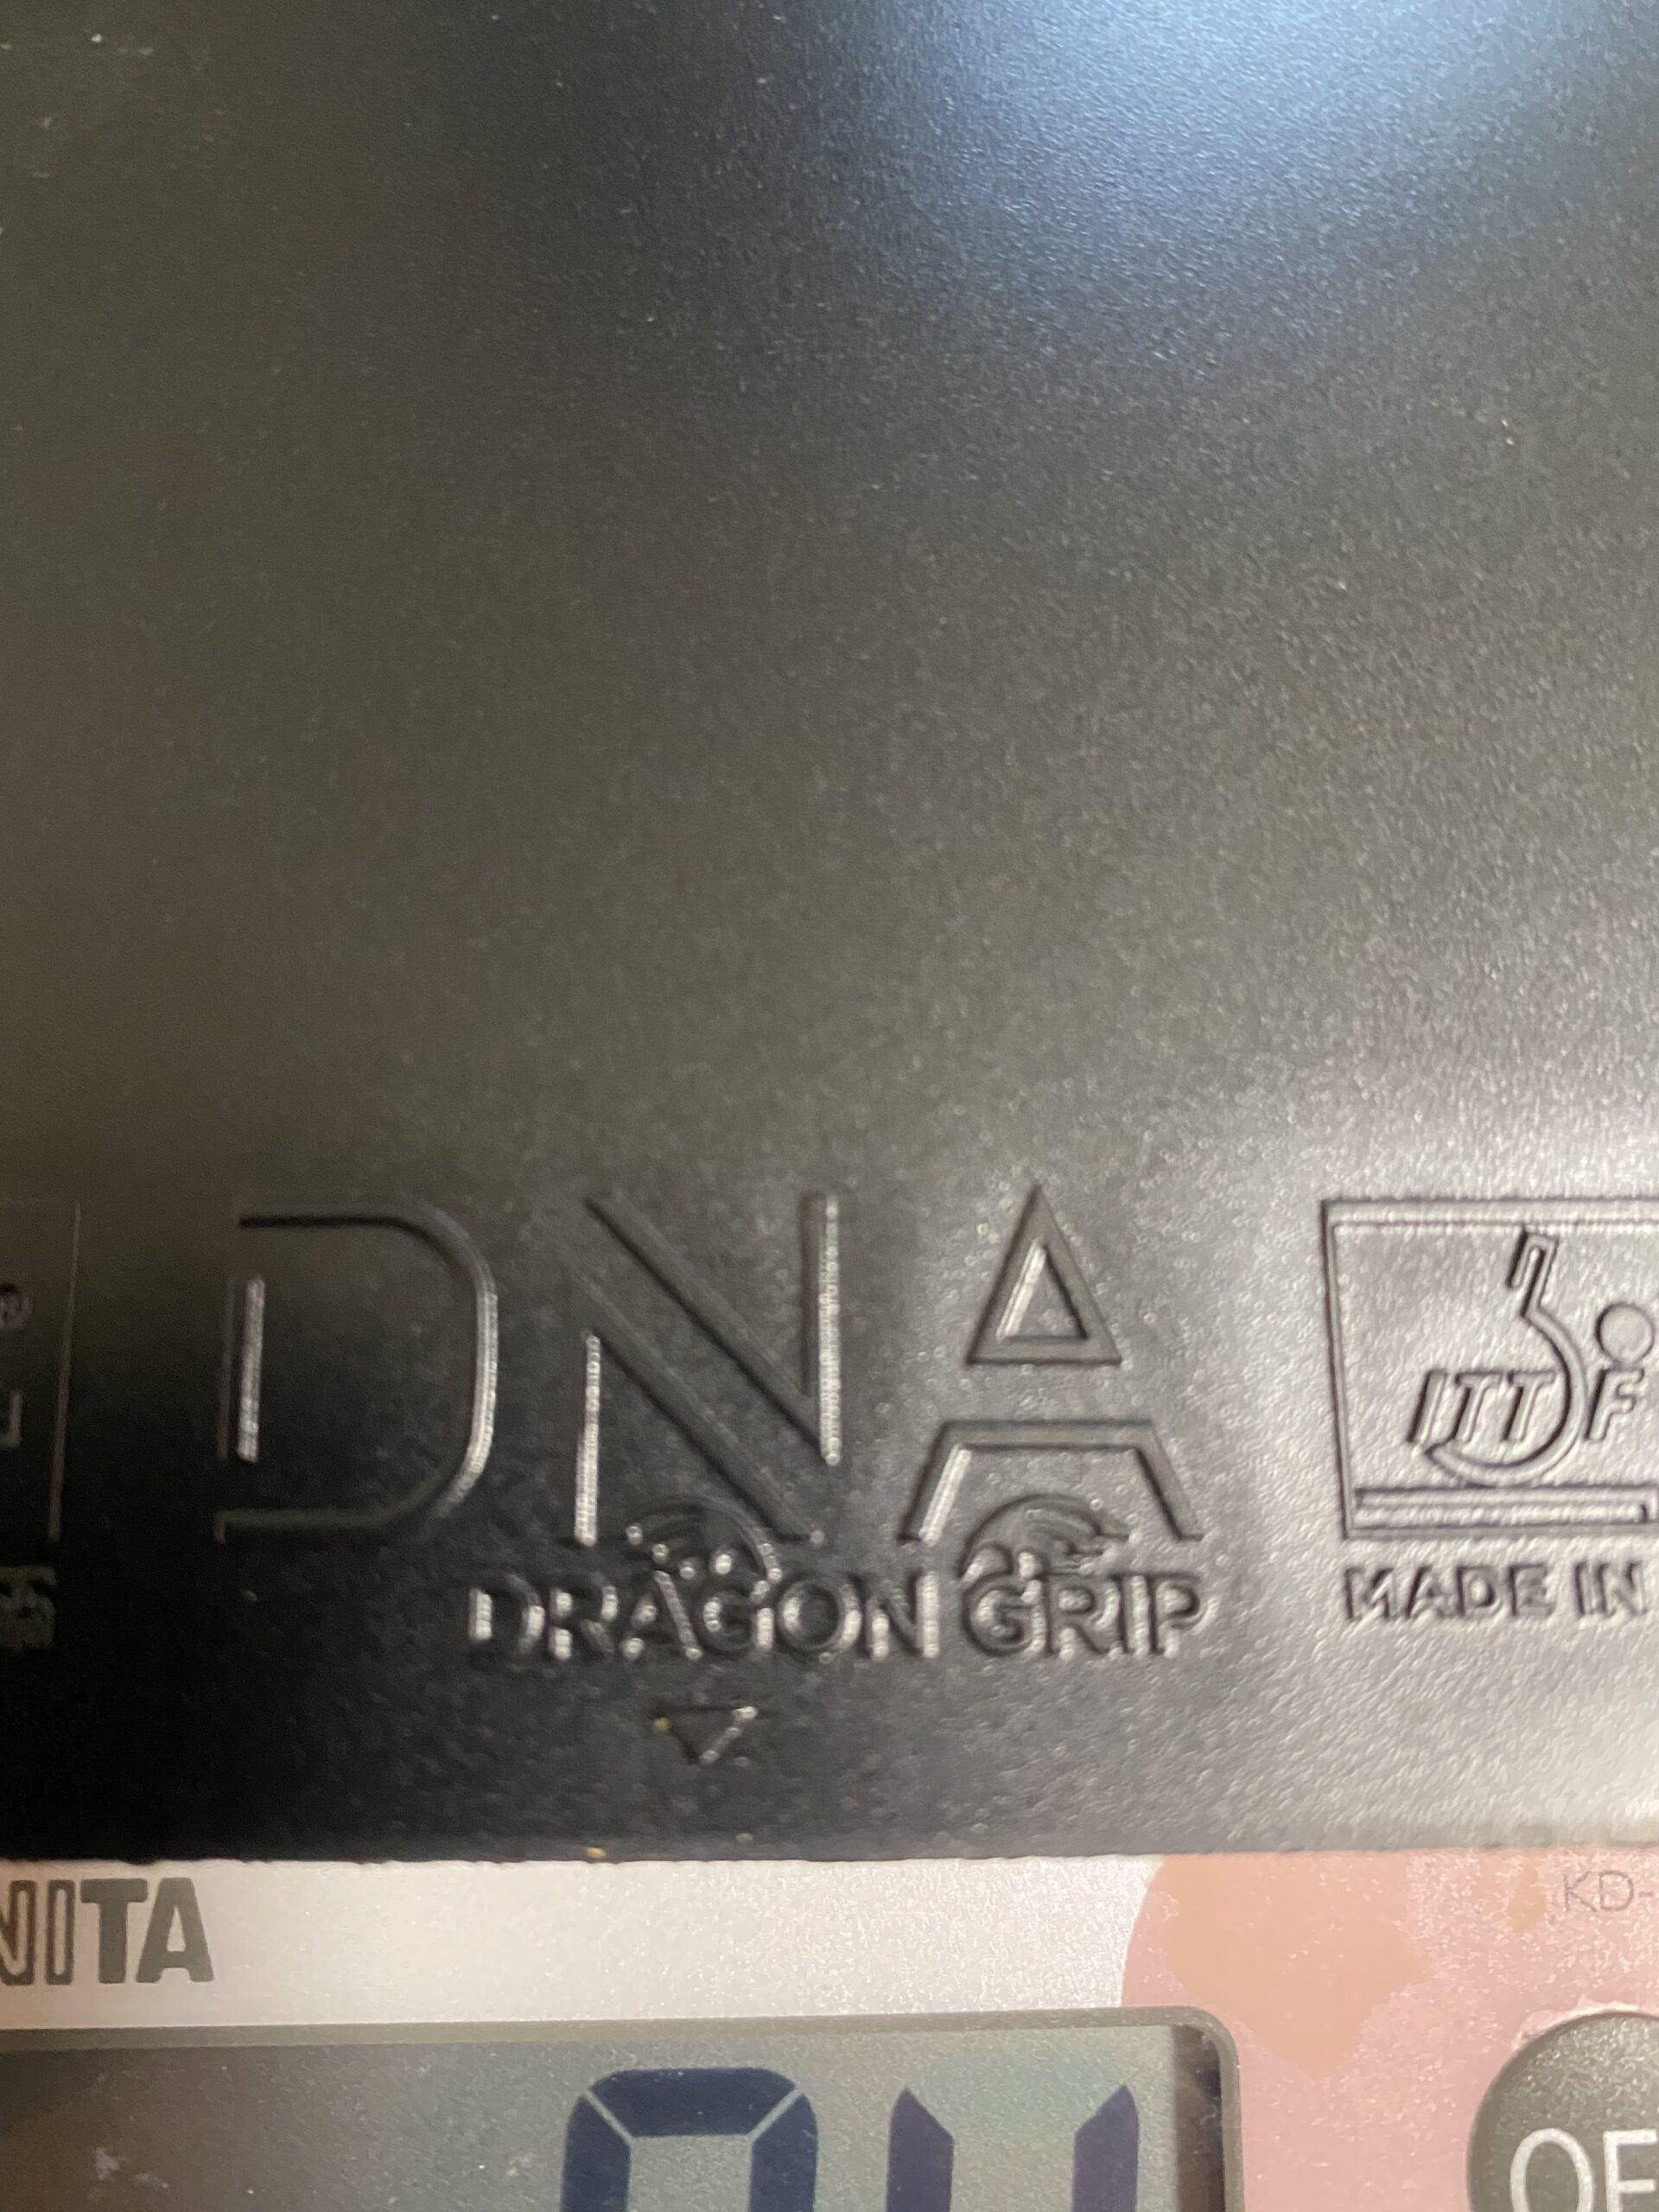 DNA ドラゴングリップ 黒 MAX STIGA